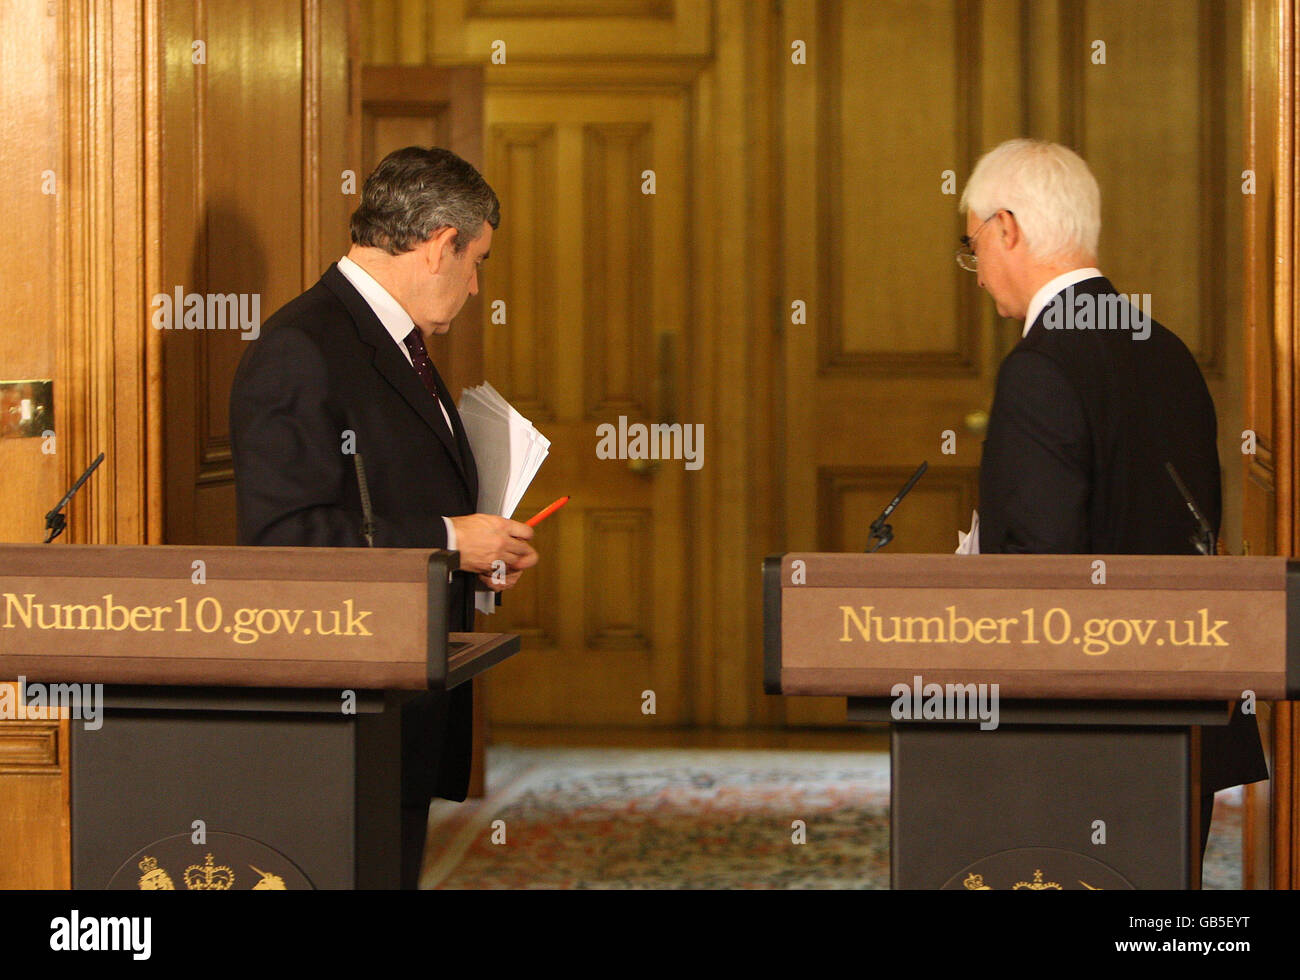 El primer ministro Gordon Brown (izquierda) y el canciller Alistair Darling durante una conferencia de prensa en 10 Downing Street, Londres. Foto de stock